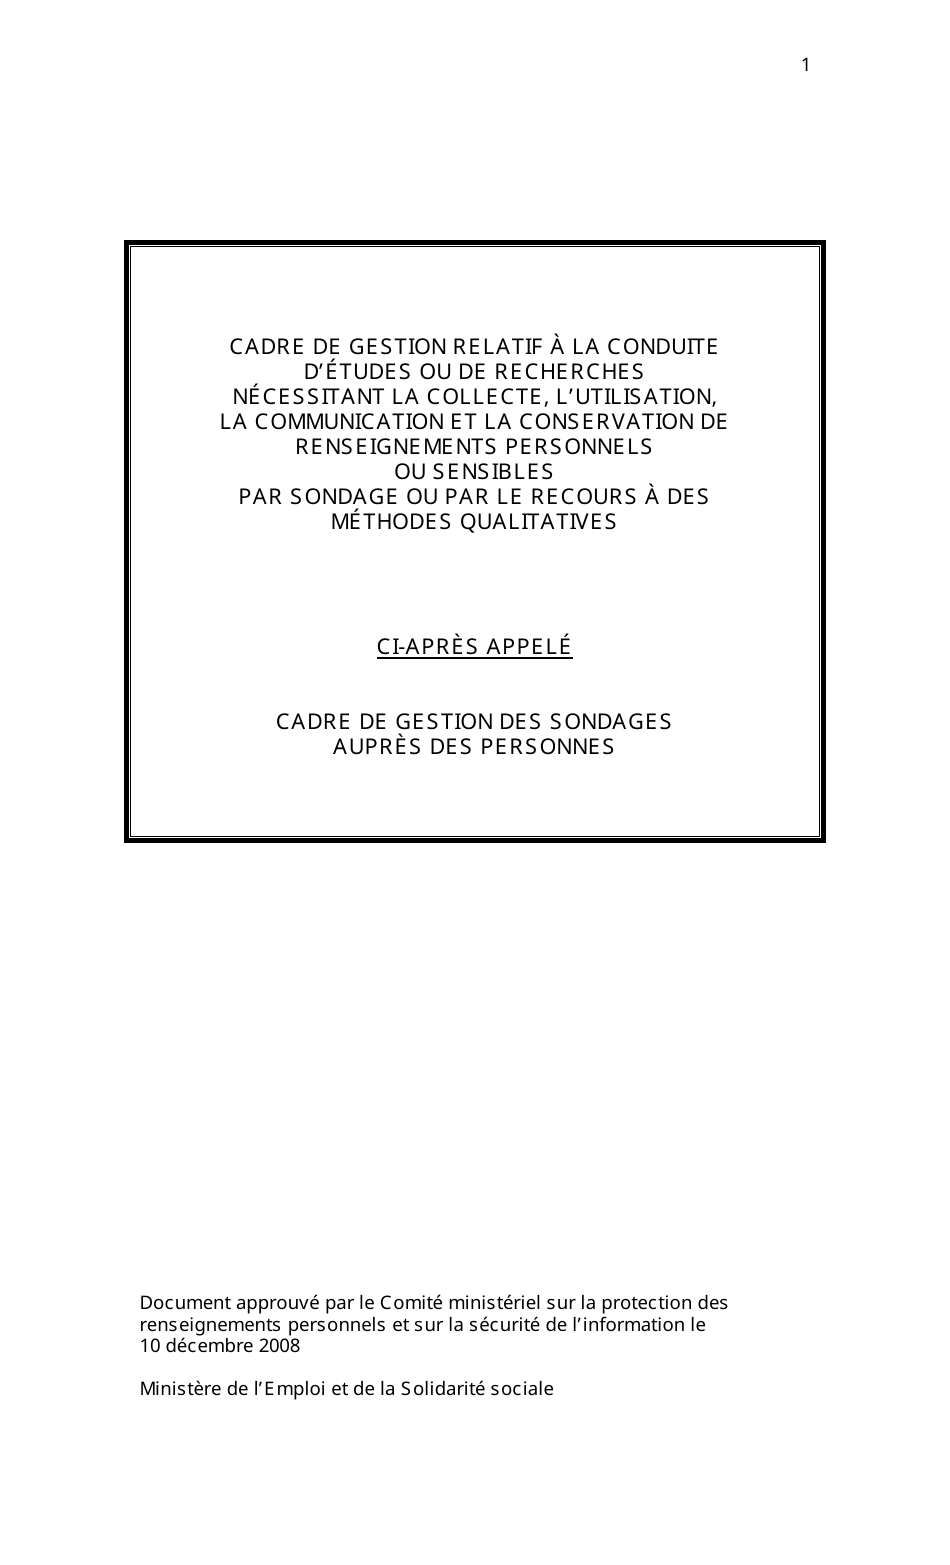 Cadre De Gestion DES Sondages Aupres DES Personnes - Quebec, Canada (French), Page 1